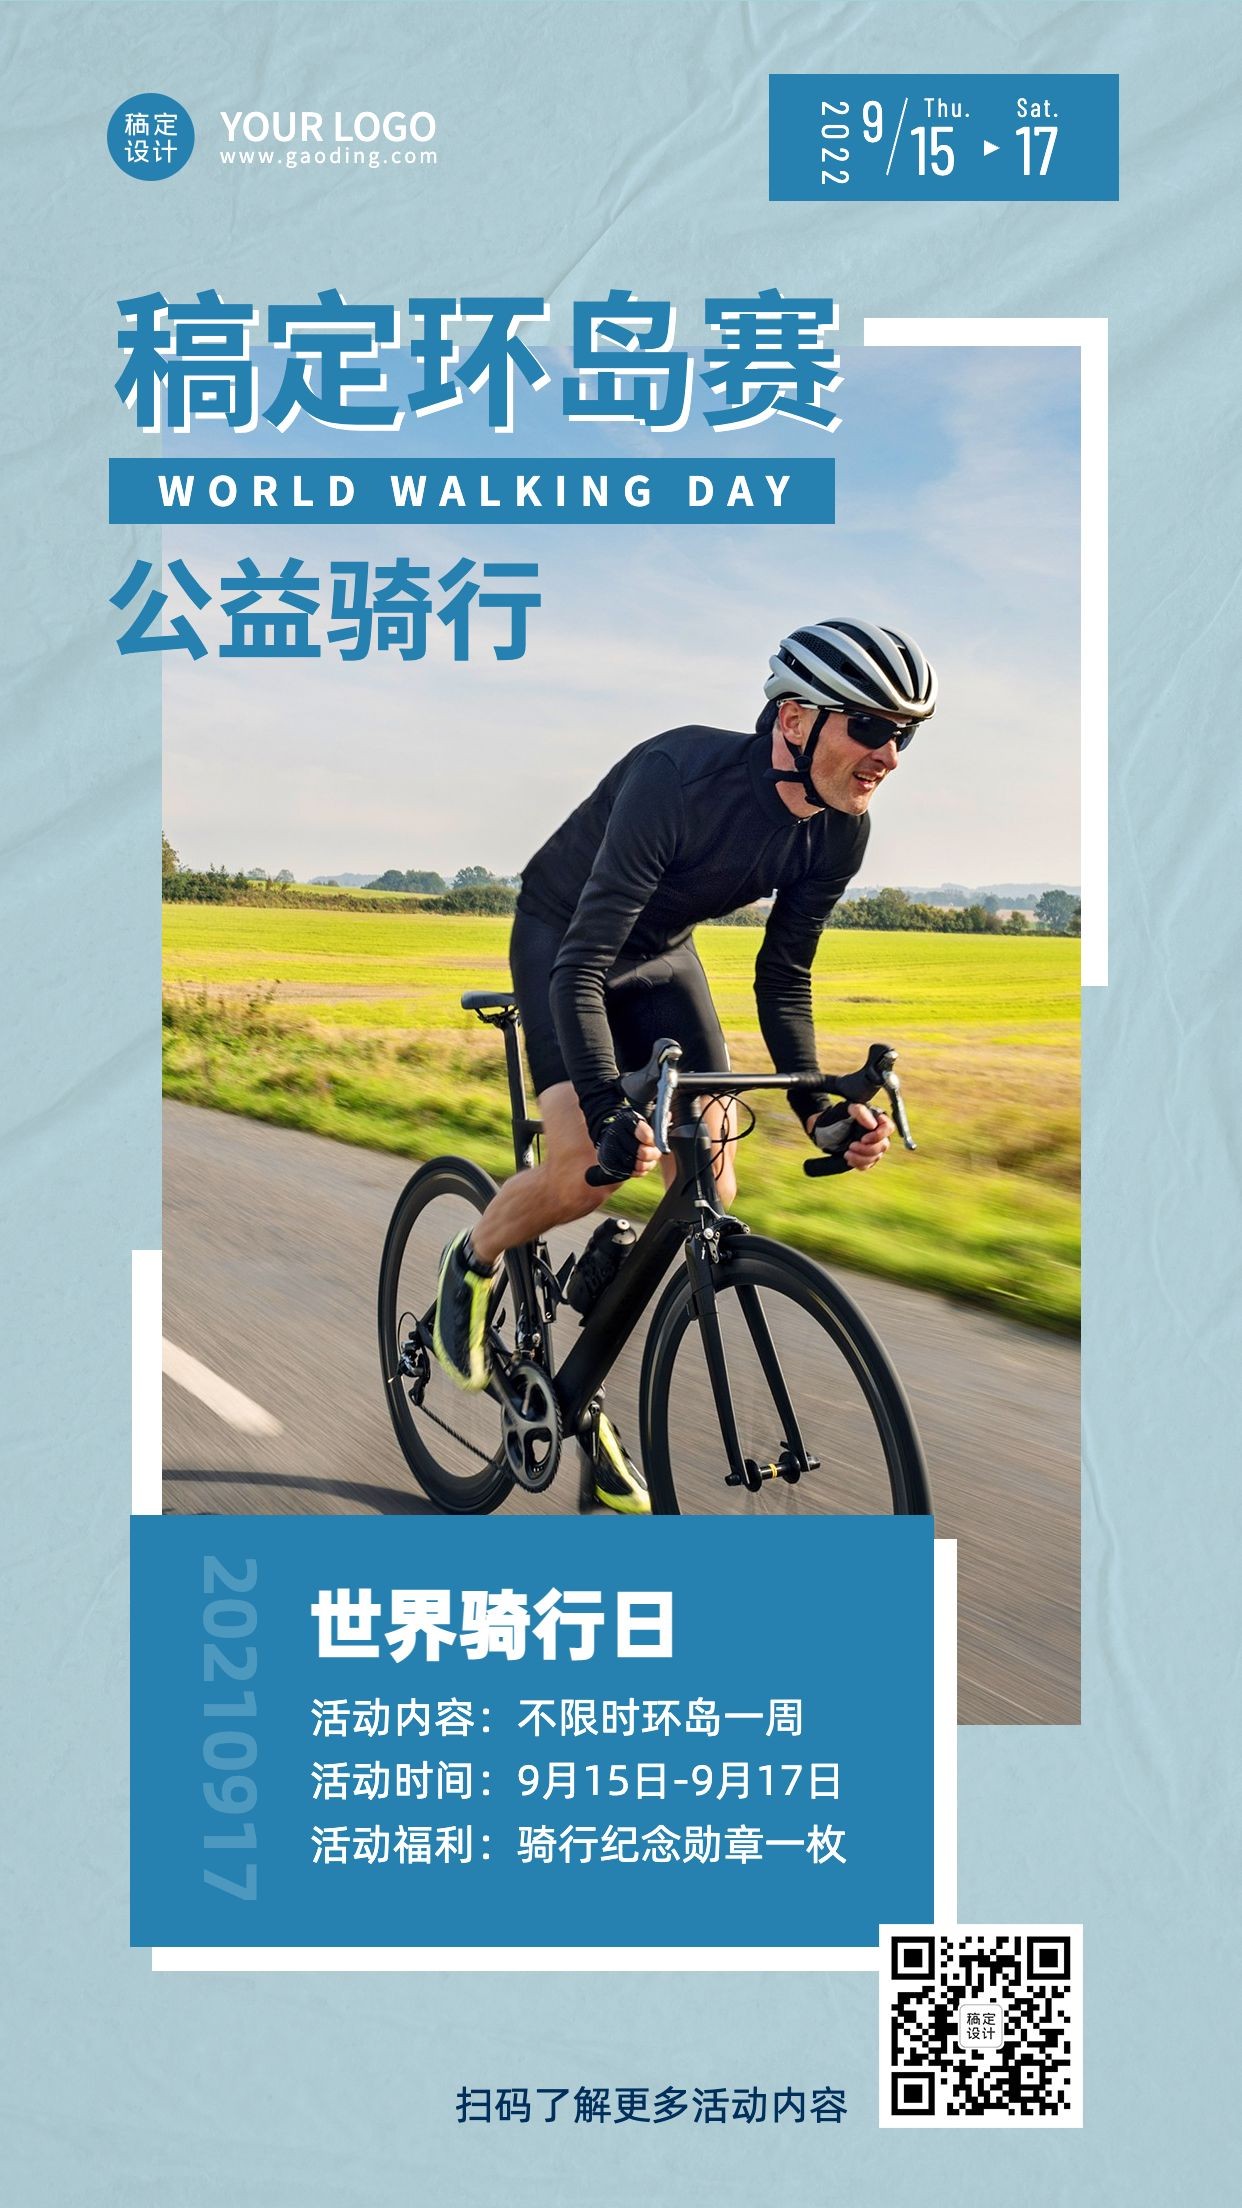 世界骑行日低碳环保出行节日活动实景海报